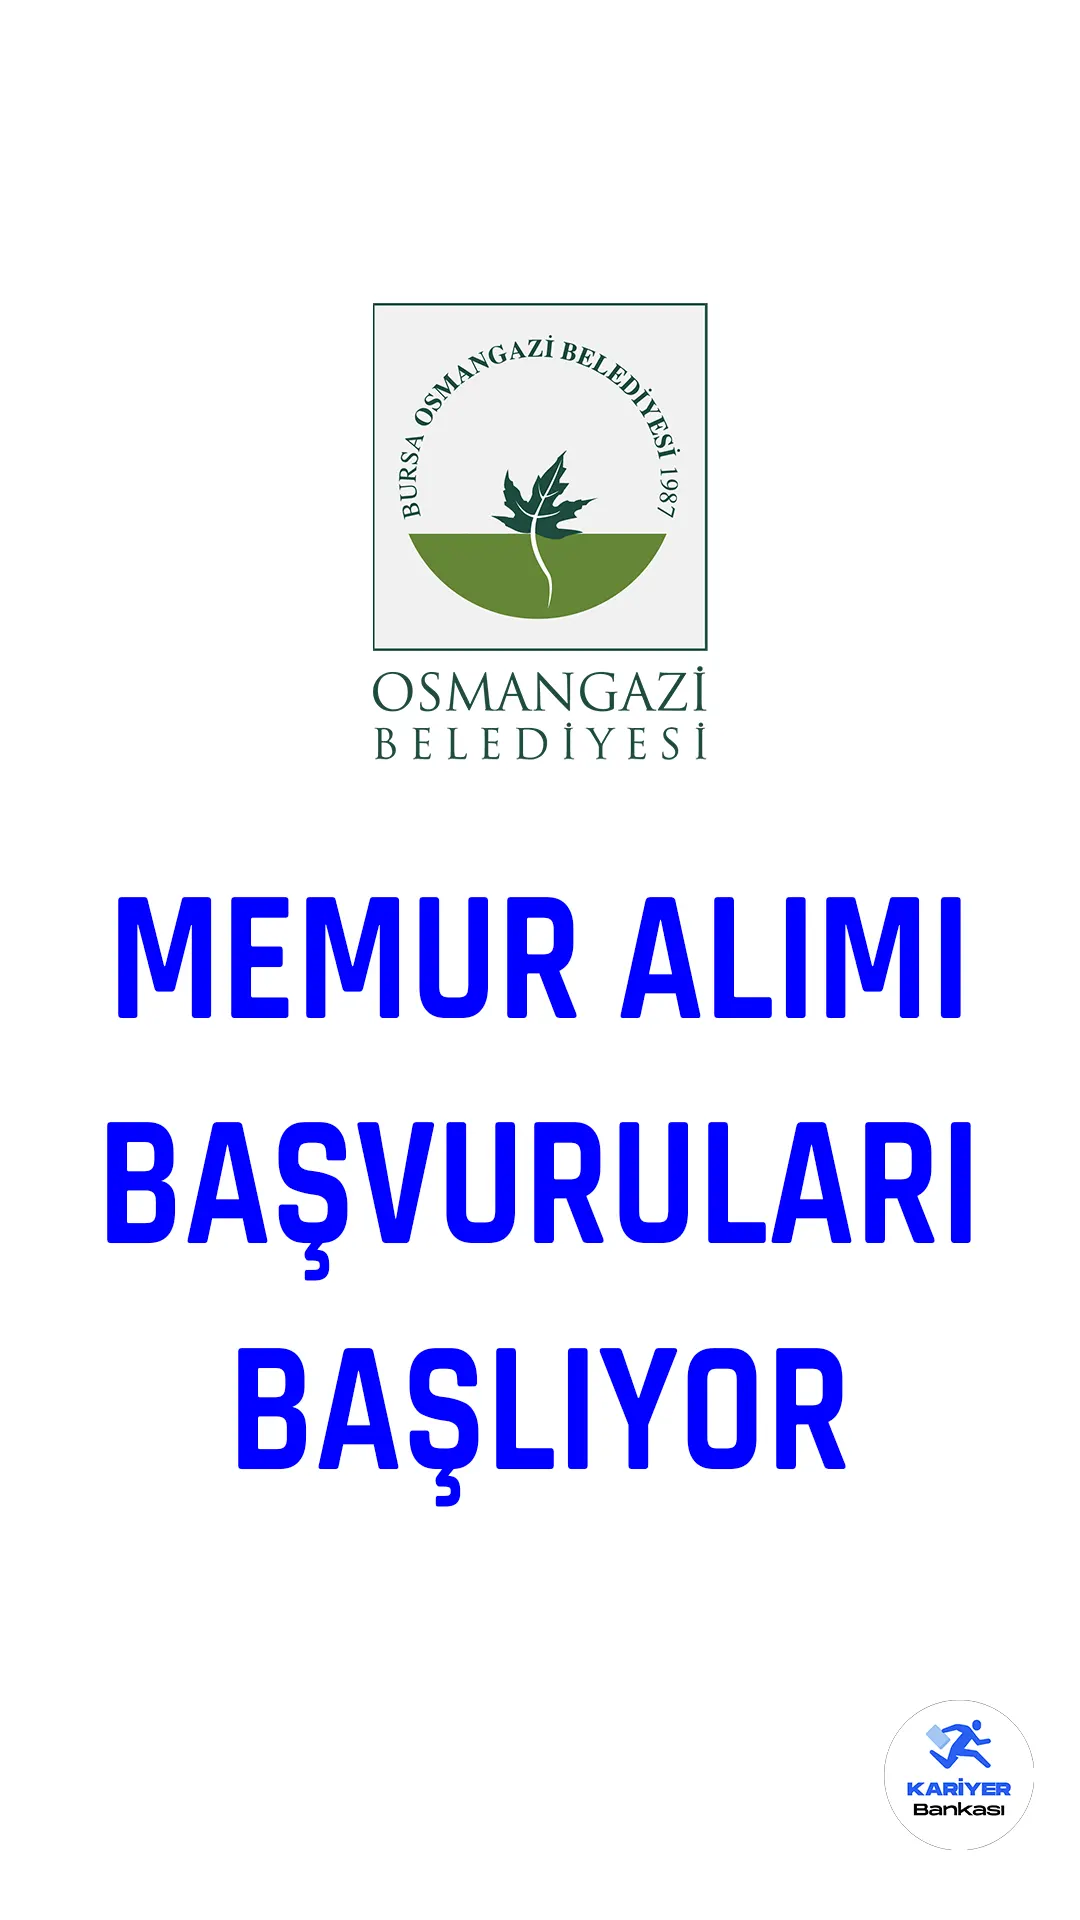 Osmangazi Belediye Başkanlığına memur ve zabıta memuru alımı için başvuru işlemleri 13 Mart 2023 tarihi itibariyle başlıyor. Başvurular 13-17 Mart tarihleri arasında alınacak.